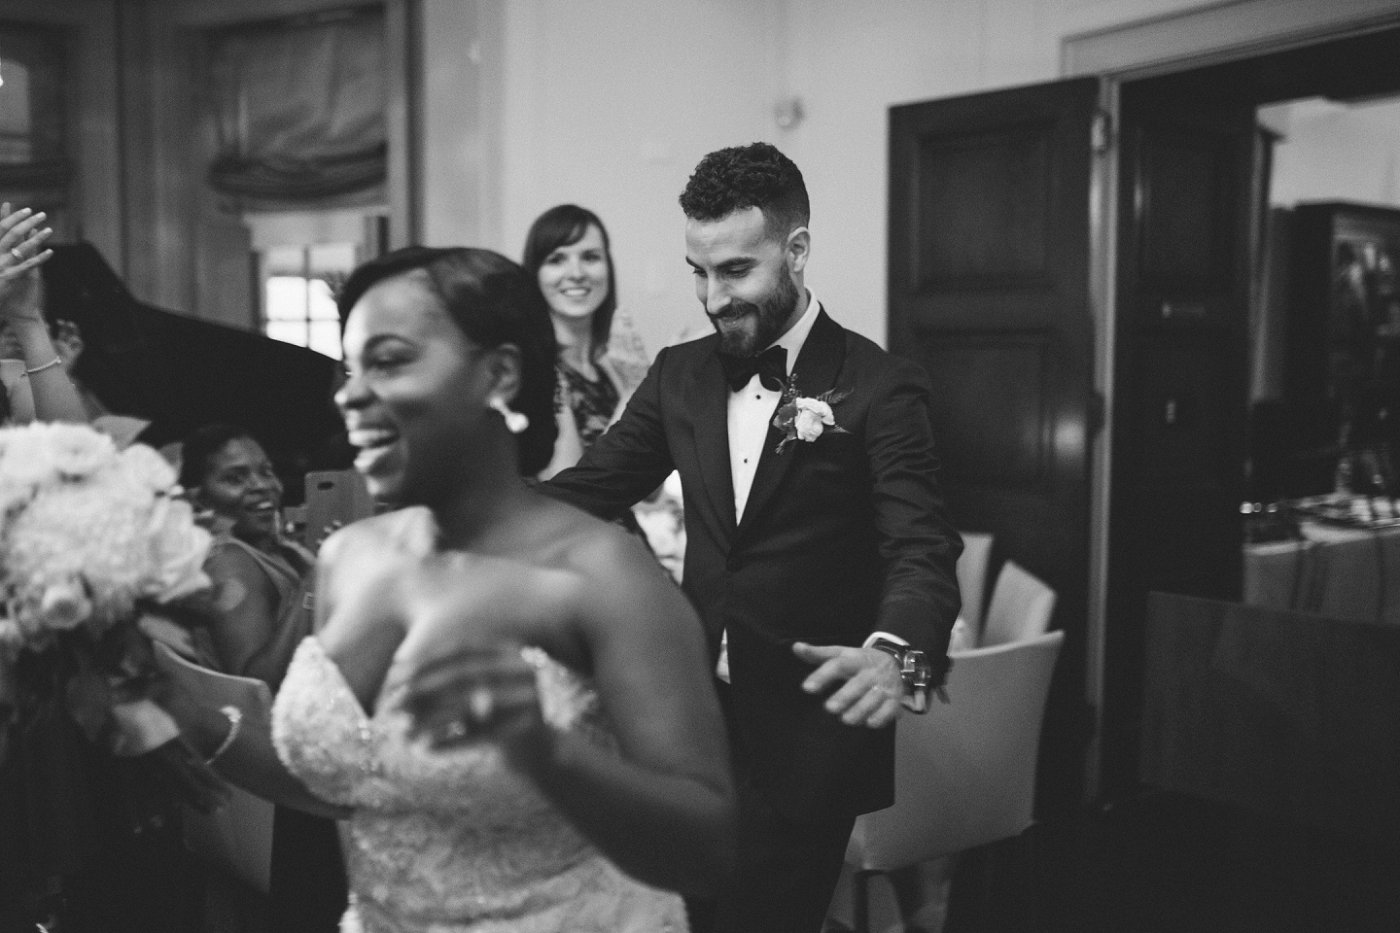 interracial wedding reception photos